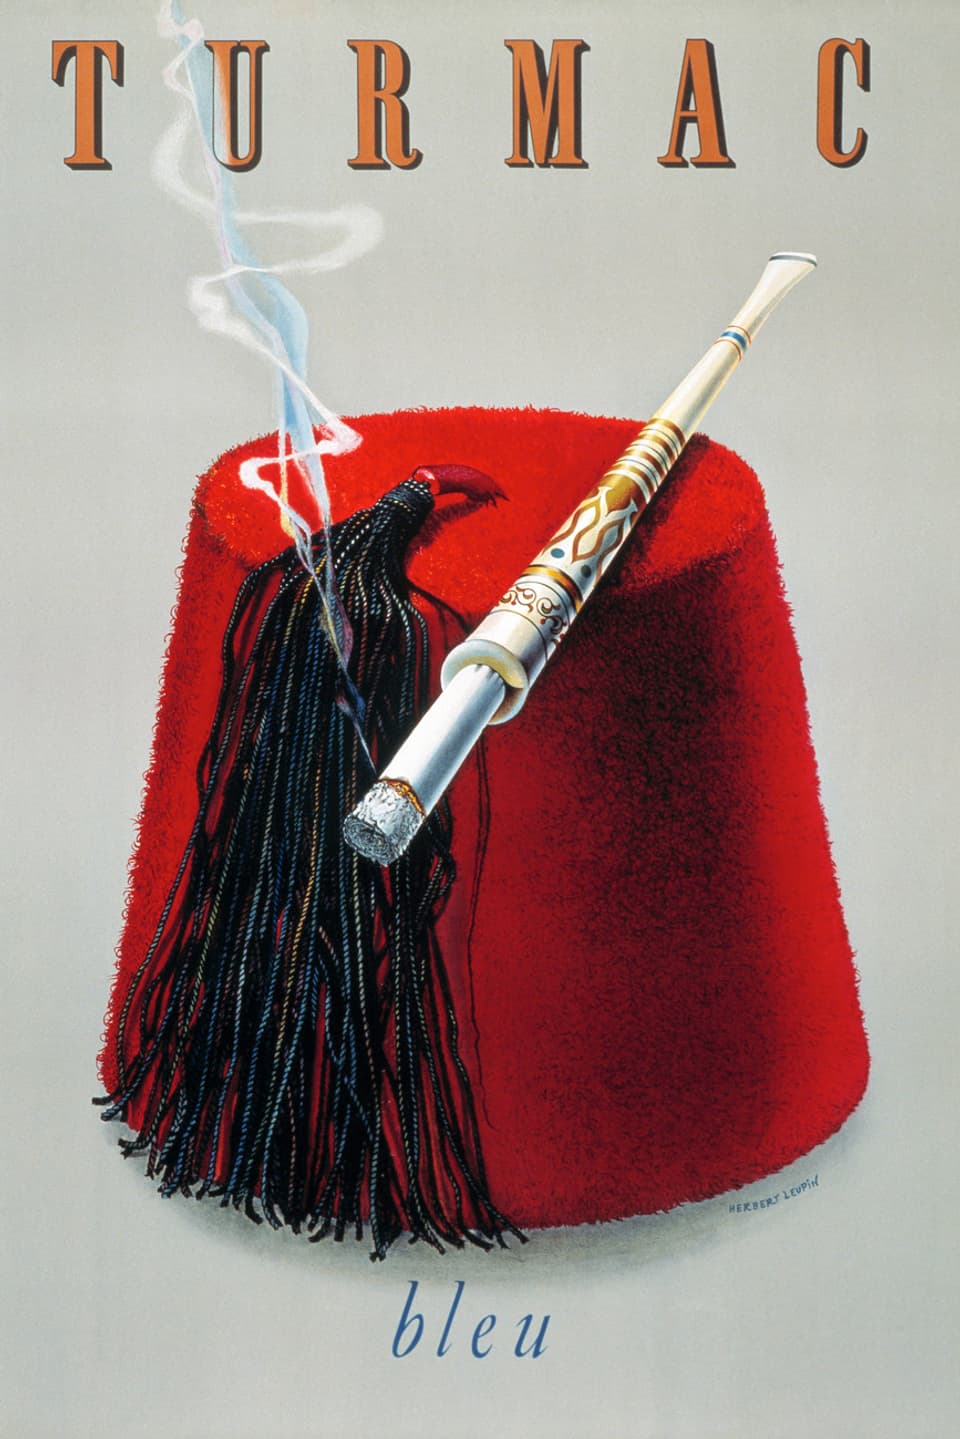 Die Graphik zeigt eine typisch orientalische Kopfbedeckung – einen roten Hut mit Bommel –, auf dem eine Zigarrette liegt.